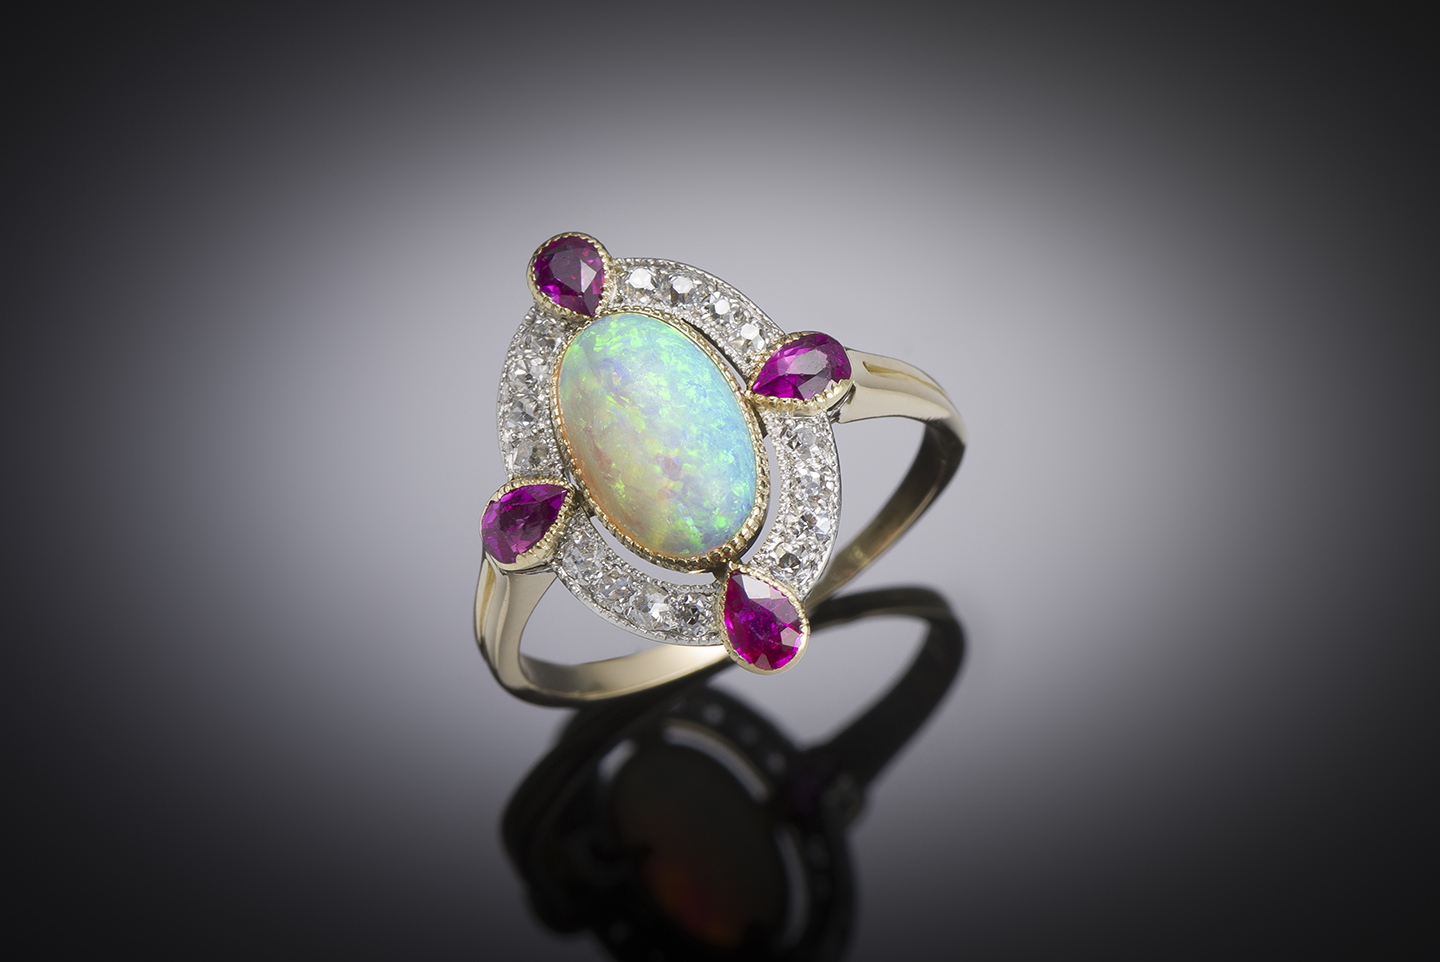 Bague opale, rubis et diamants vers 1900-1